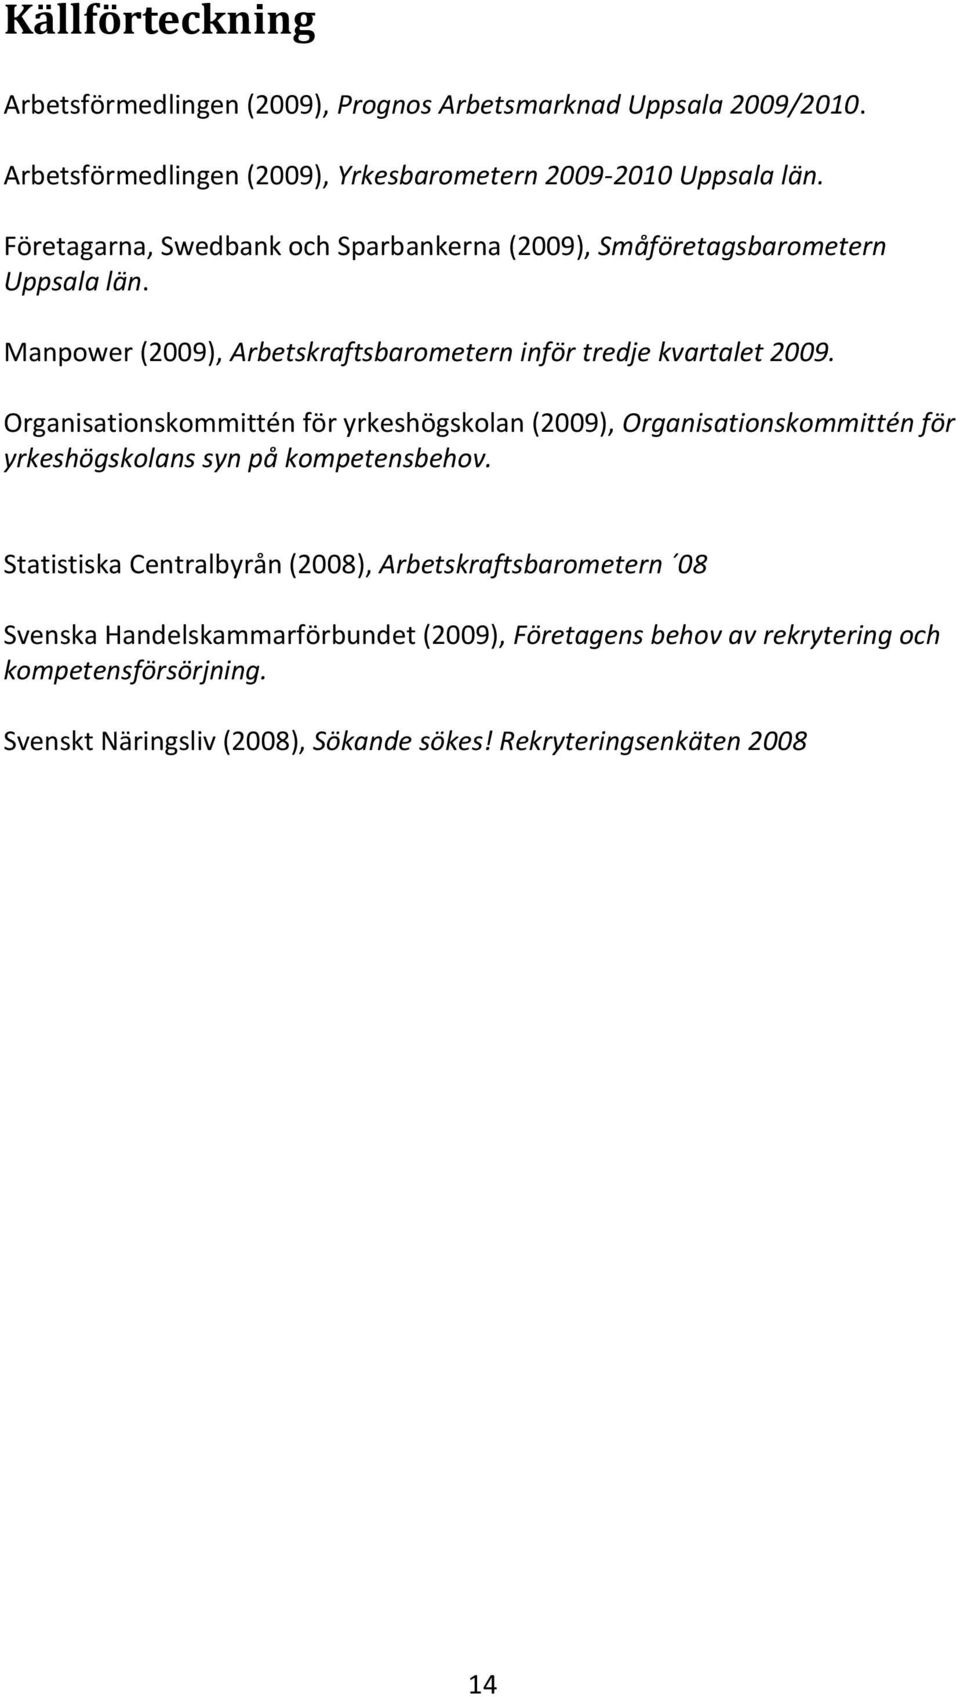 Organisationskommittén för yrkeshögskolan (2009), Organisationskommittén för yrkeshögskolans syn på kompetensbehov.